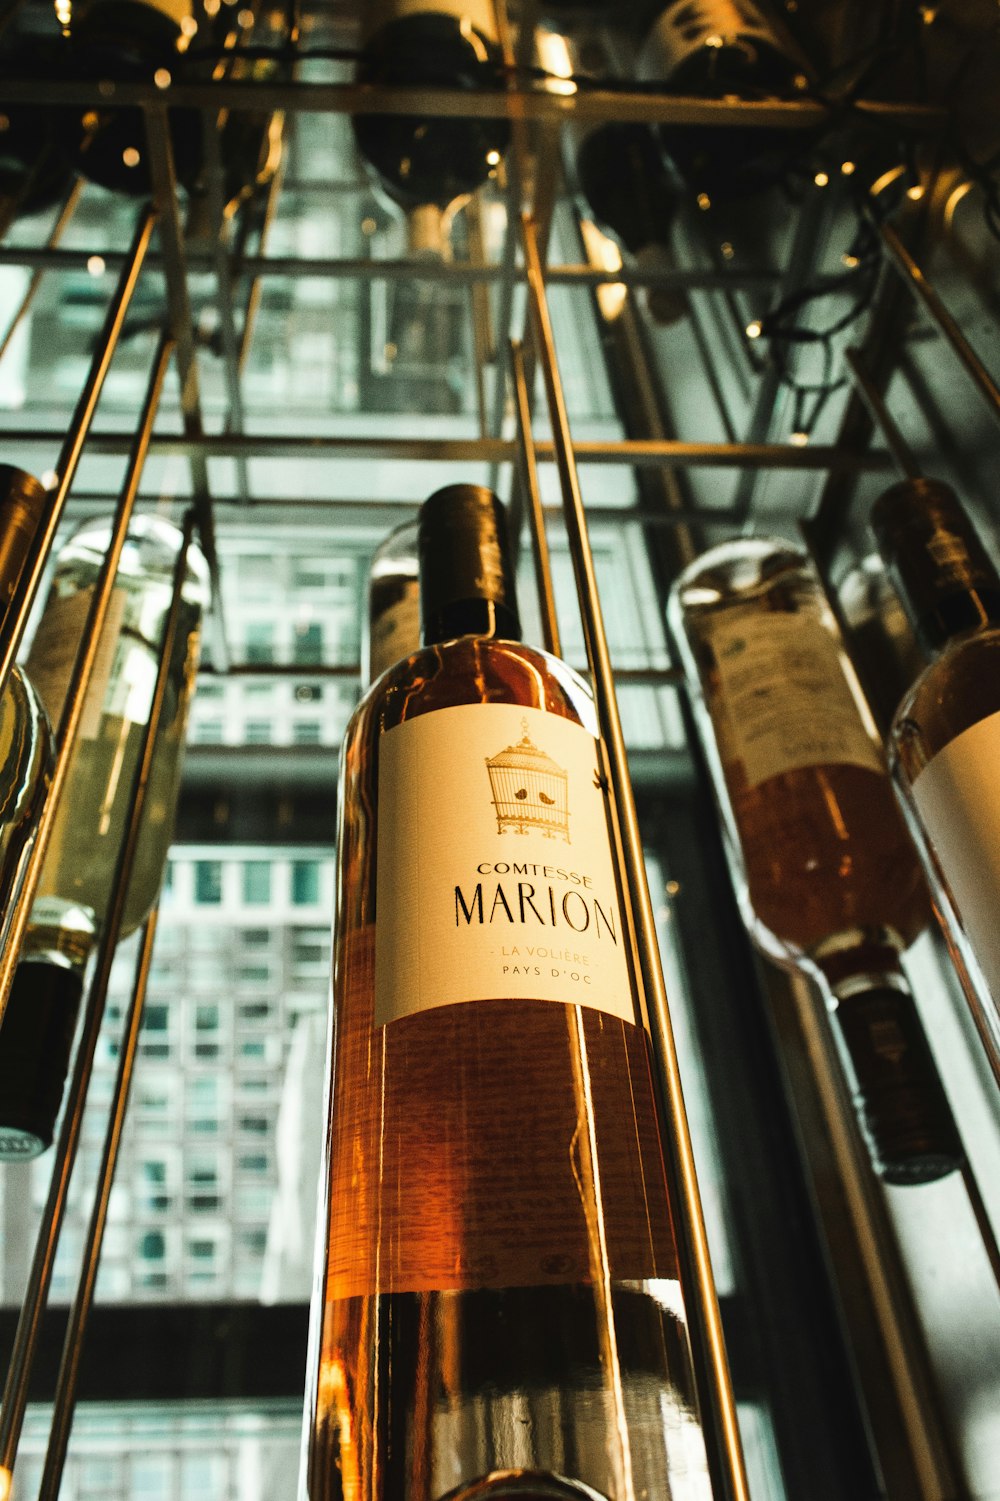 Marion wine glass bottle